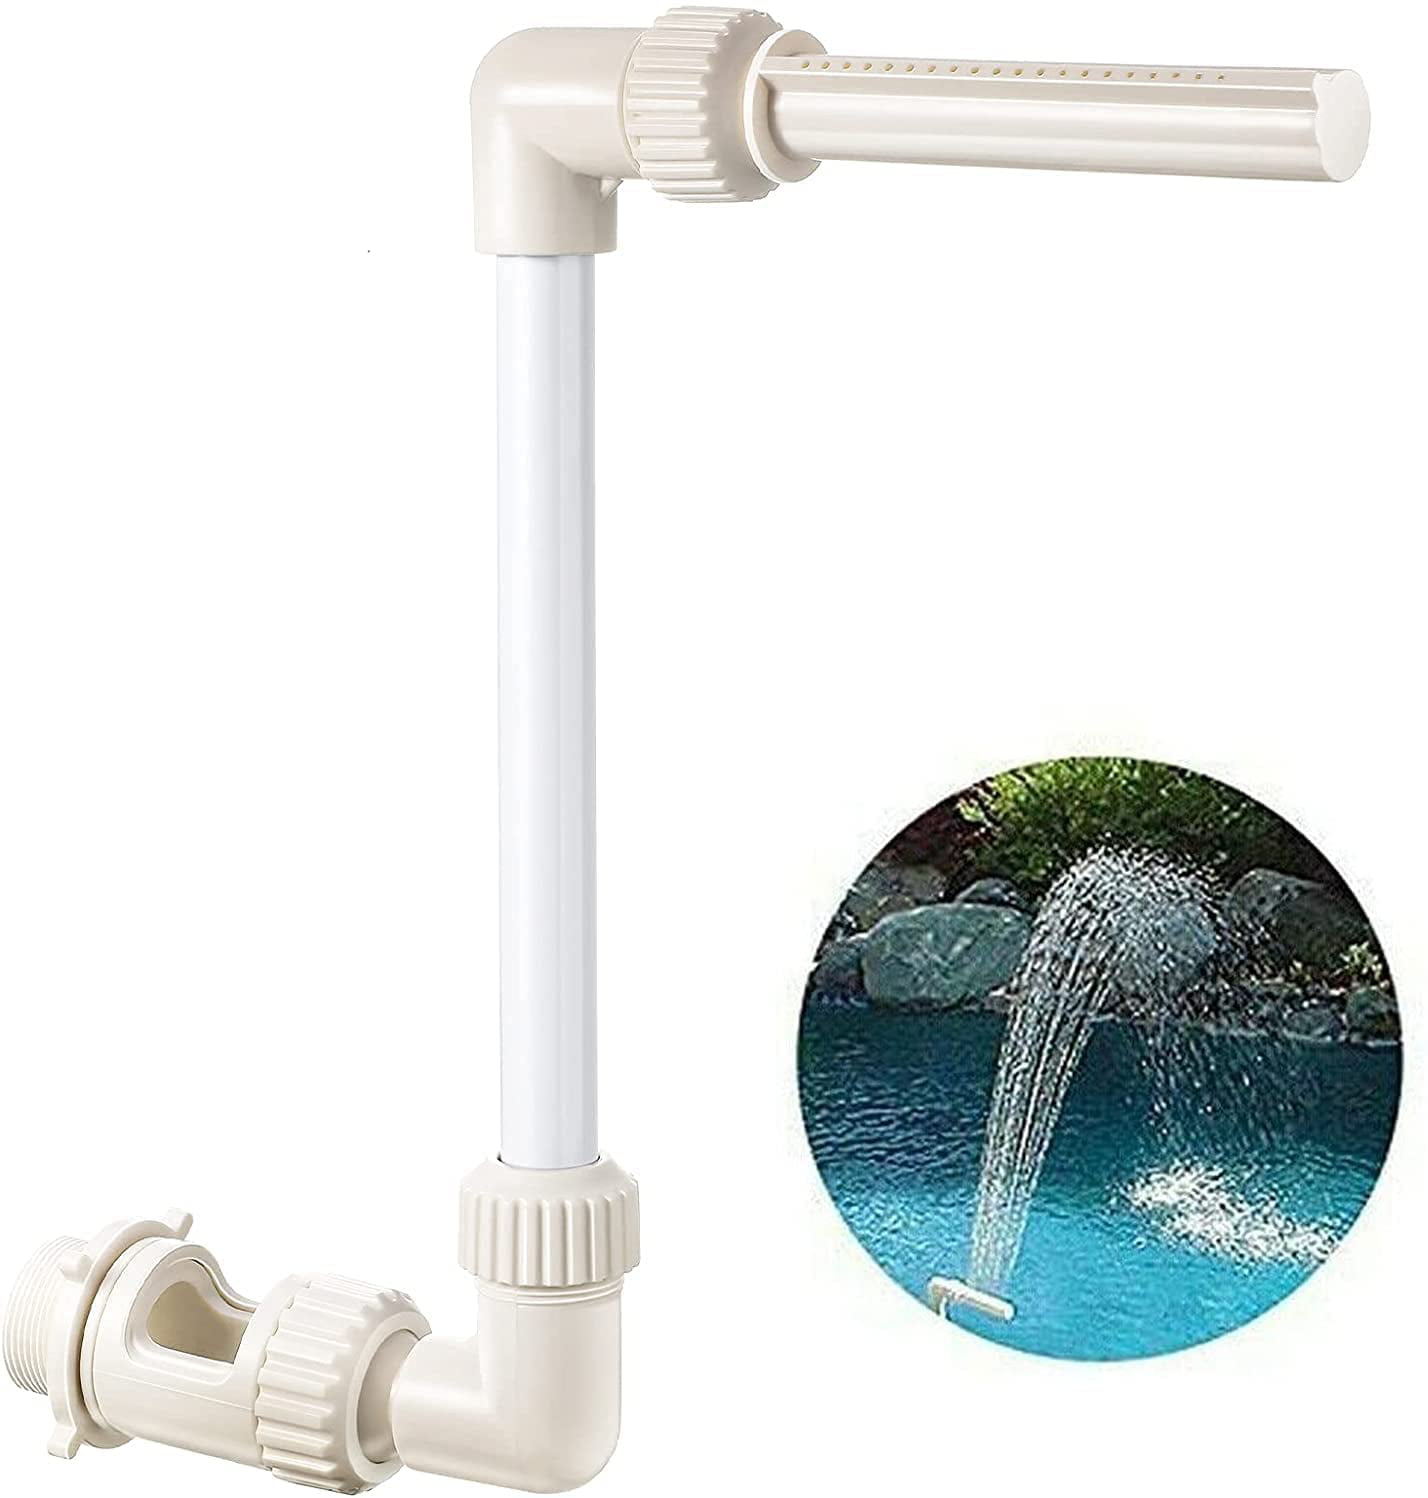 Tubes Nozzle head Multifunctional Fountain Parts Watering Sprinklers Pool 